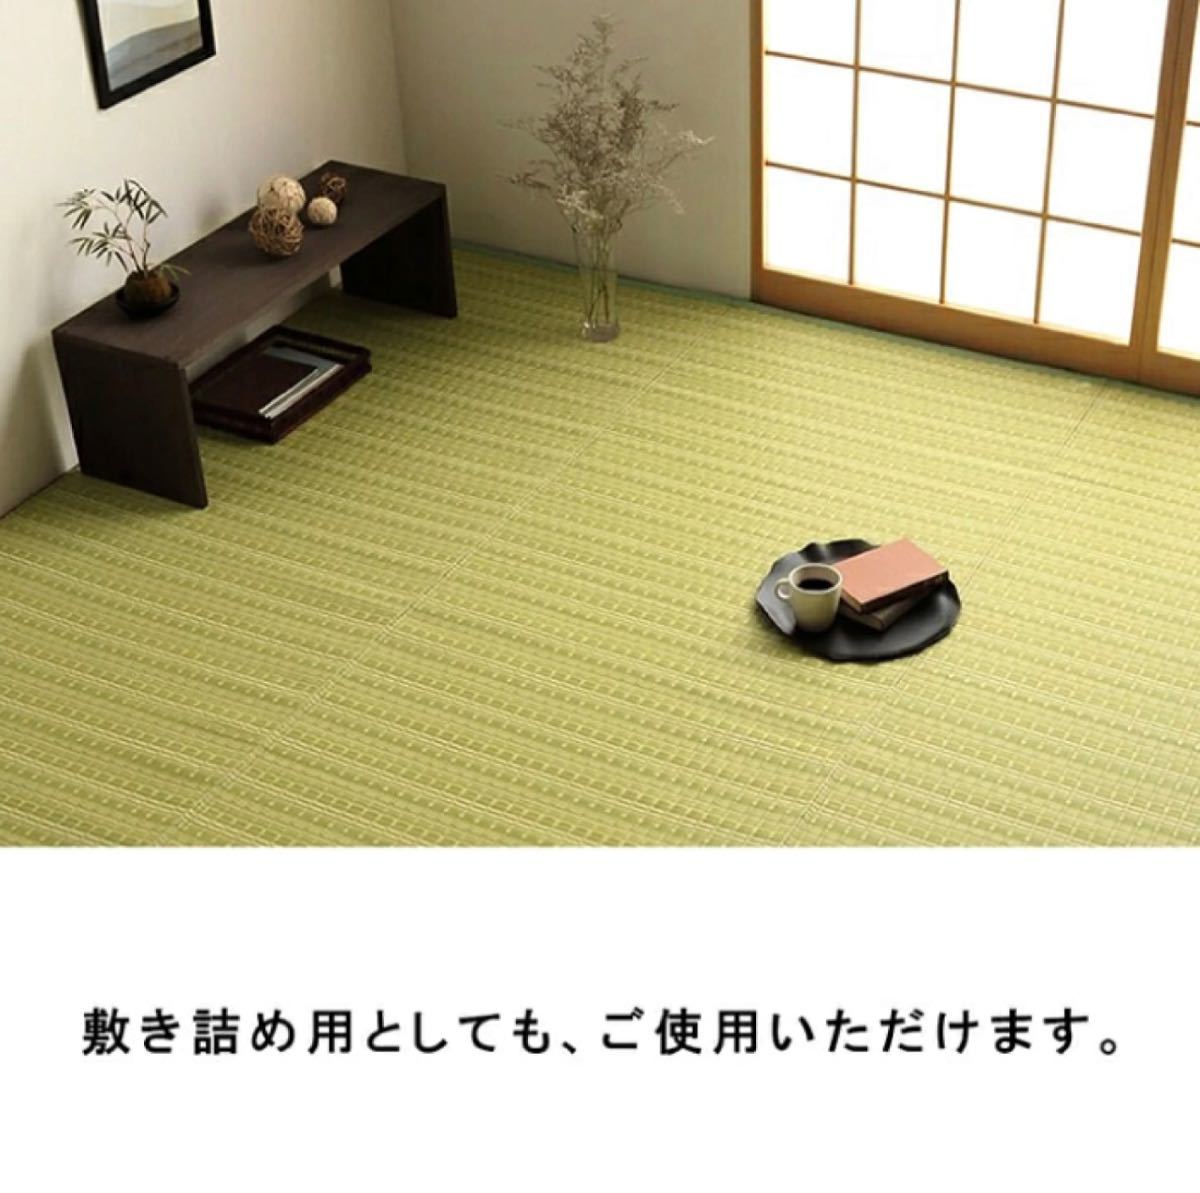 【送料無料】洗えるカーペット ダイニング ラグ 日本製 バルカン 江戸間10畳_画像7